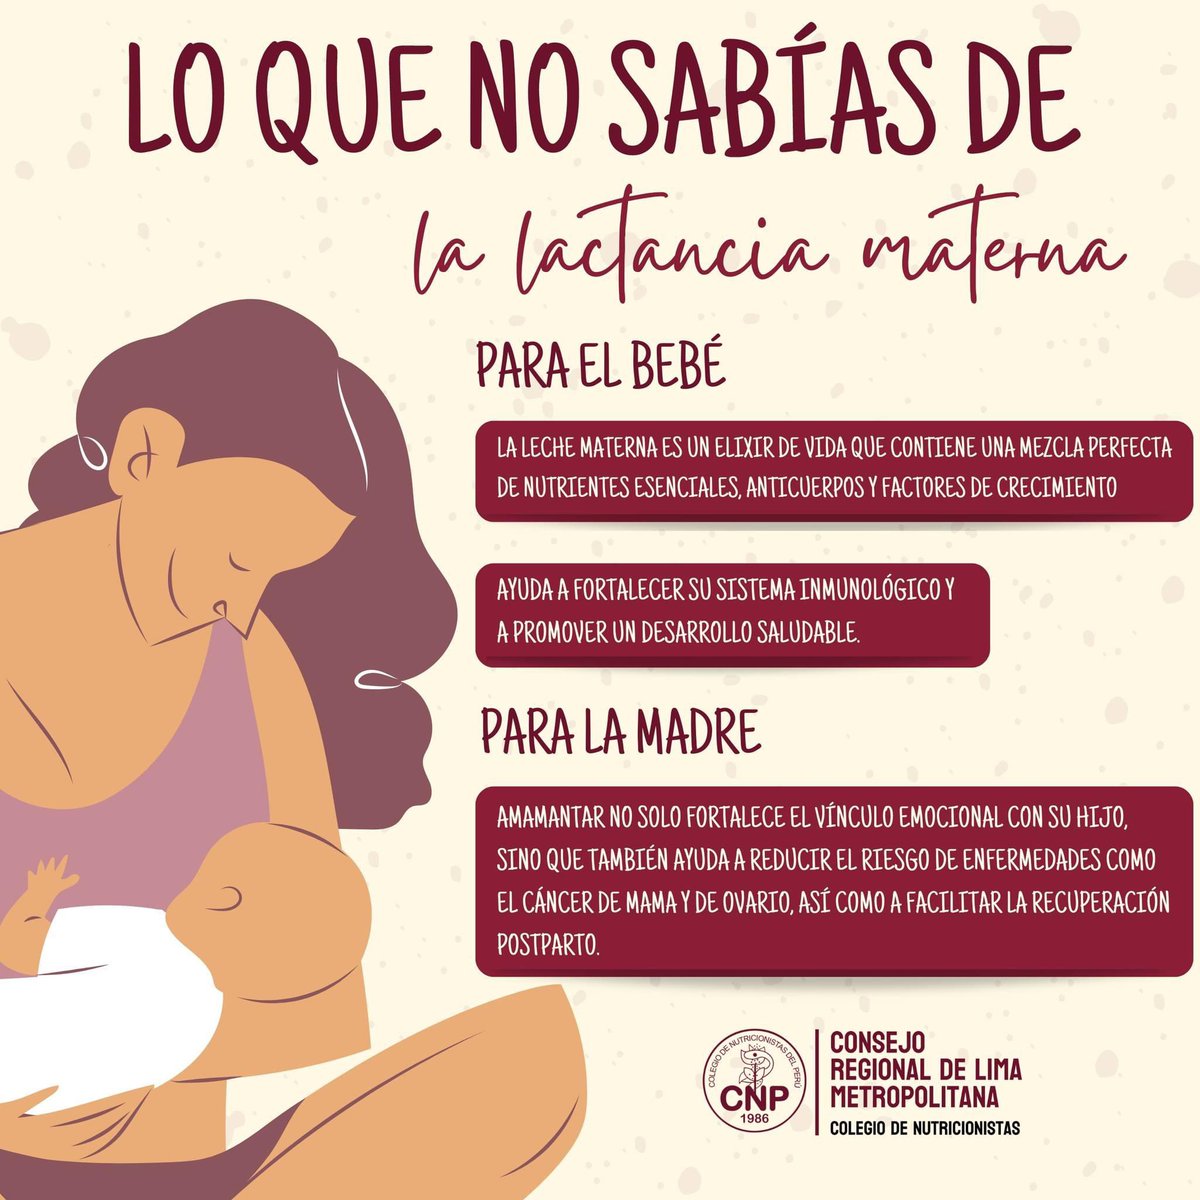 #LactanciaMaterna | La lactancia materna es mucho más que simplemente alimentar a un bebé. Es un acto de amor y nutrición que proporciona beneficios incomparables para la salud y el bienestar tanto del bebé como de la madre. 💕

👶 Para el bebé, la leche materna es un elixir de